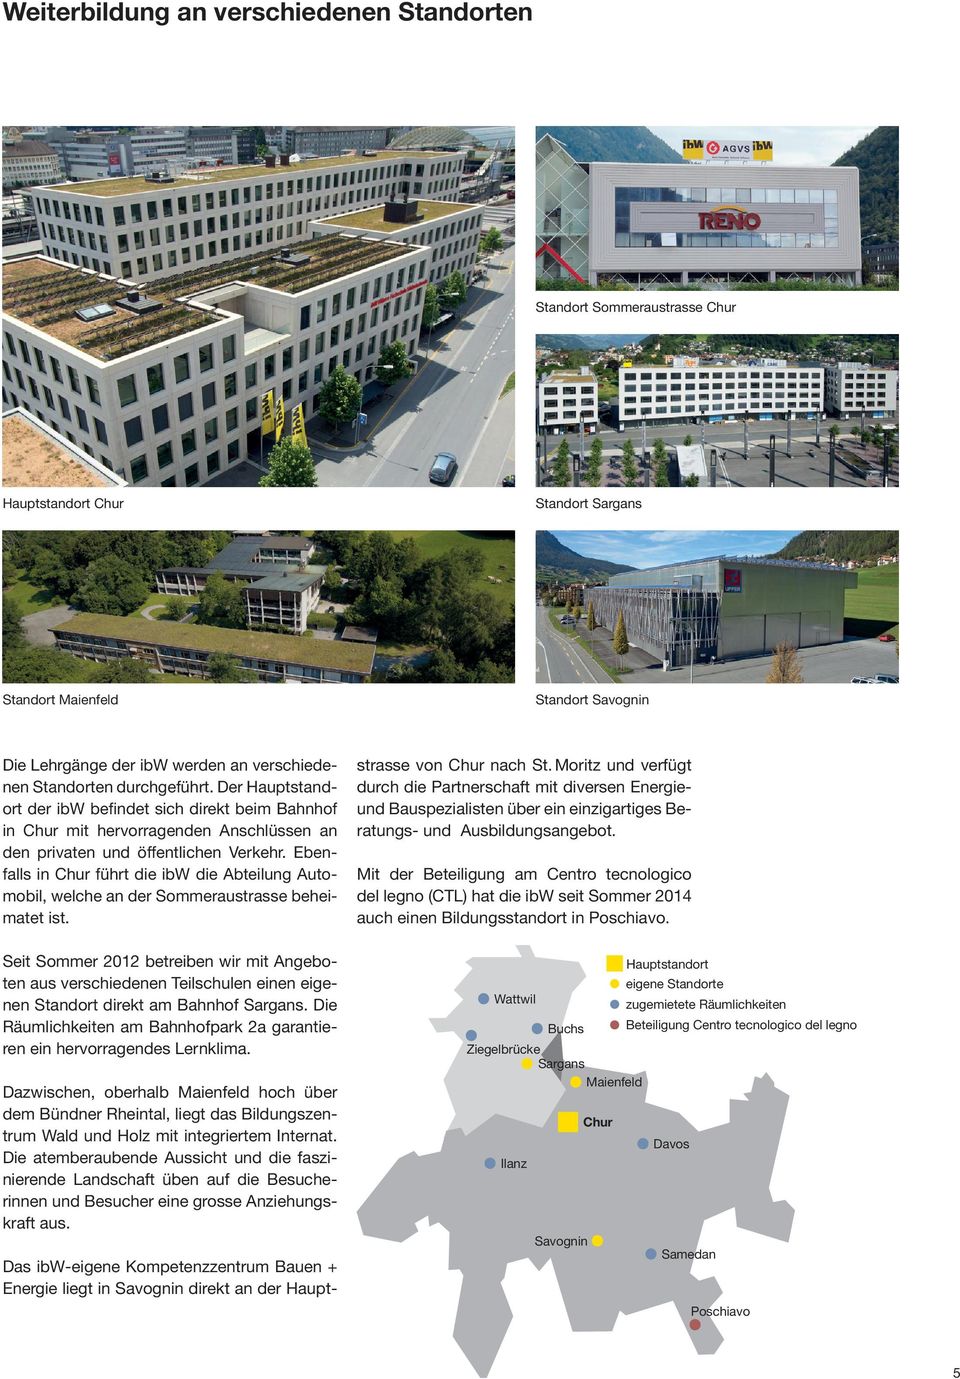 Ebenfalls in Chur führt die ibw die Abteilung Automobil, welche an der Sommeraustrasse beheimatet ist.